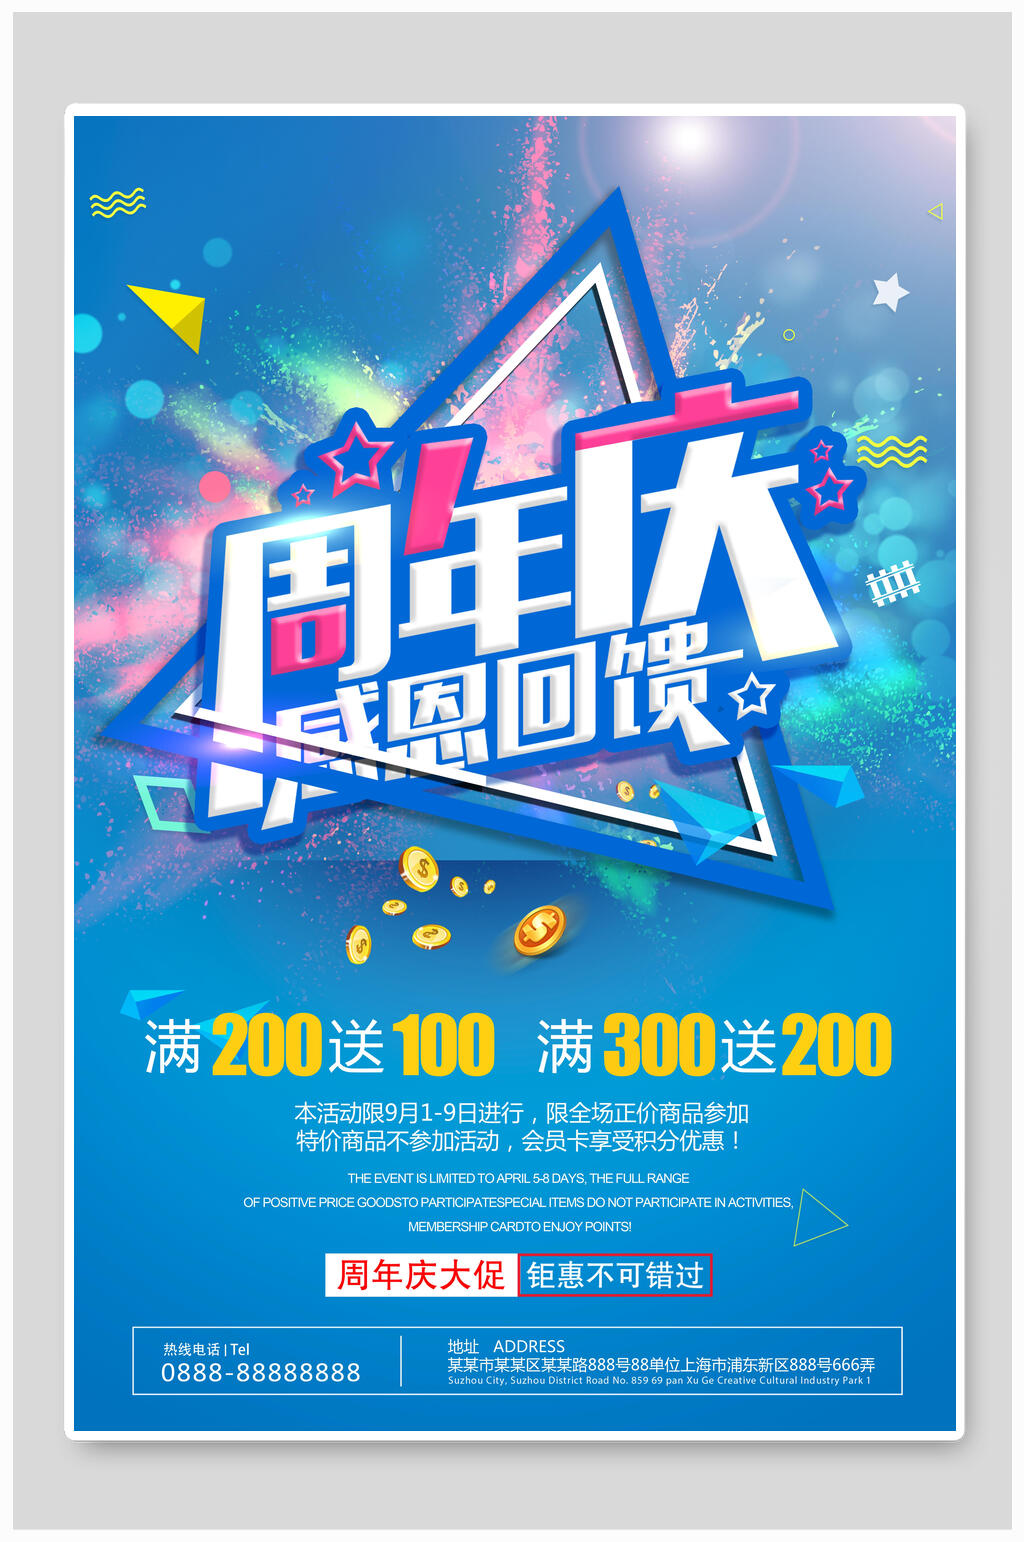 众图网独家提供清新蓝色周年庆宣传海报素材免费下载,本作品是由小红